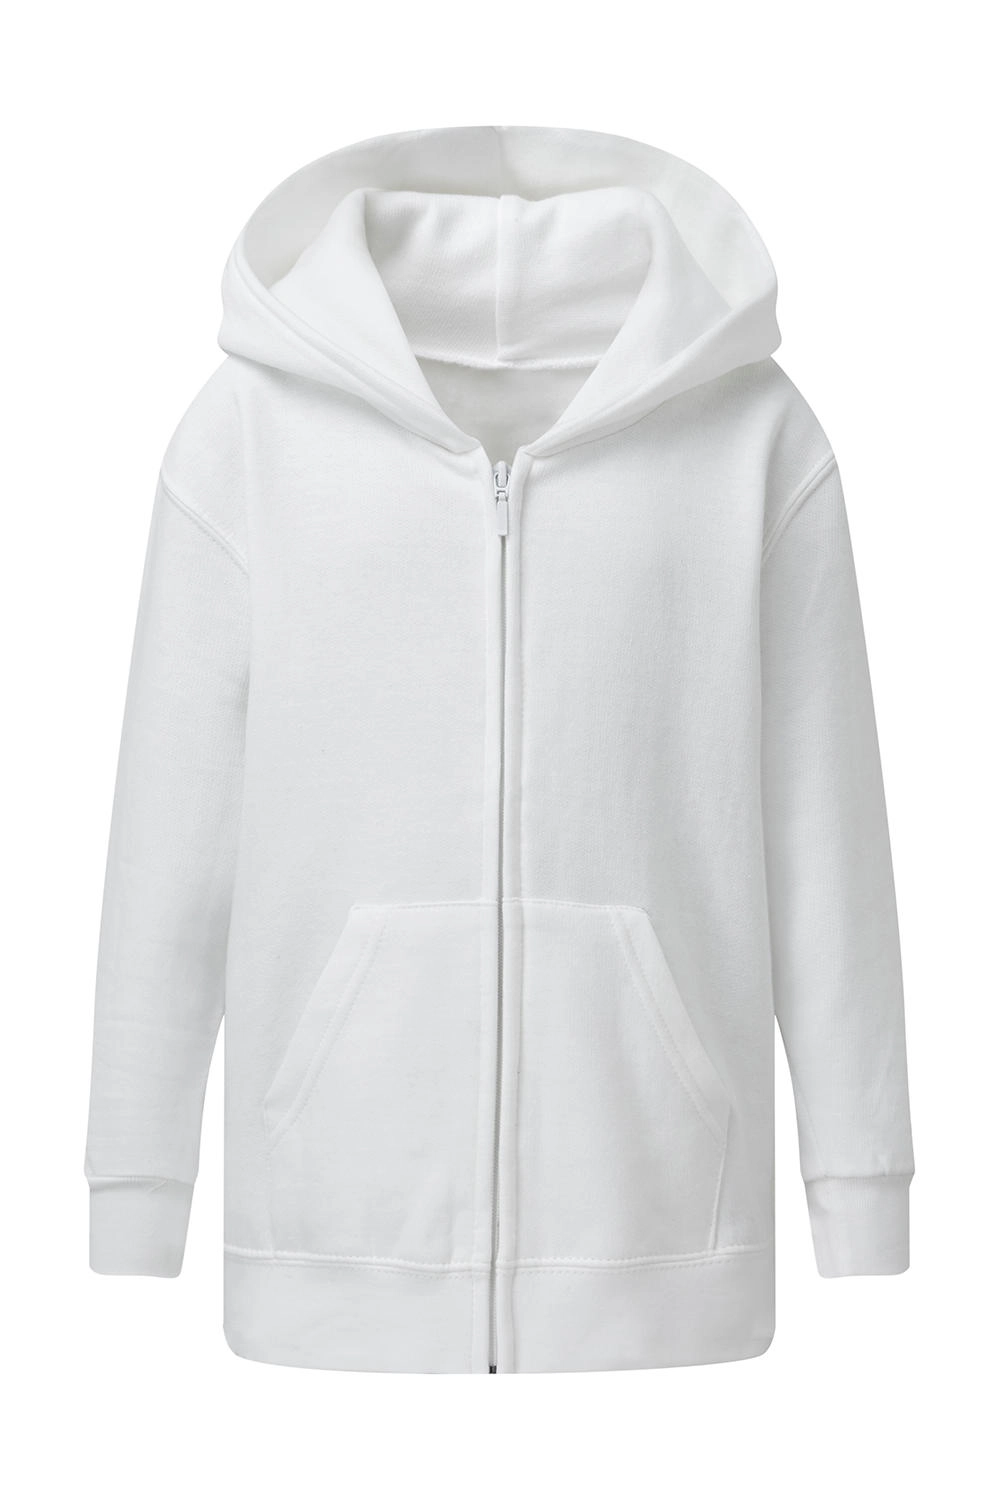 Hooded Full Zip Kids zum Besticken und Bedrucken in der Farbe White mit Ihren Logo, Schriftzug oder Motiv.